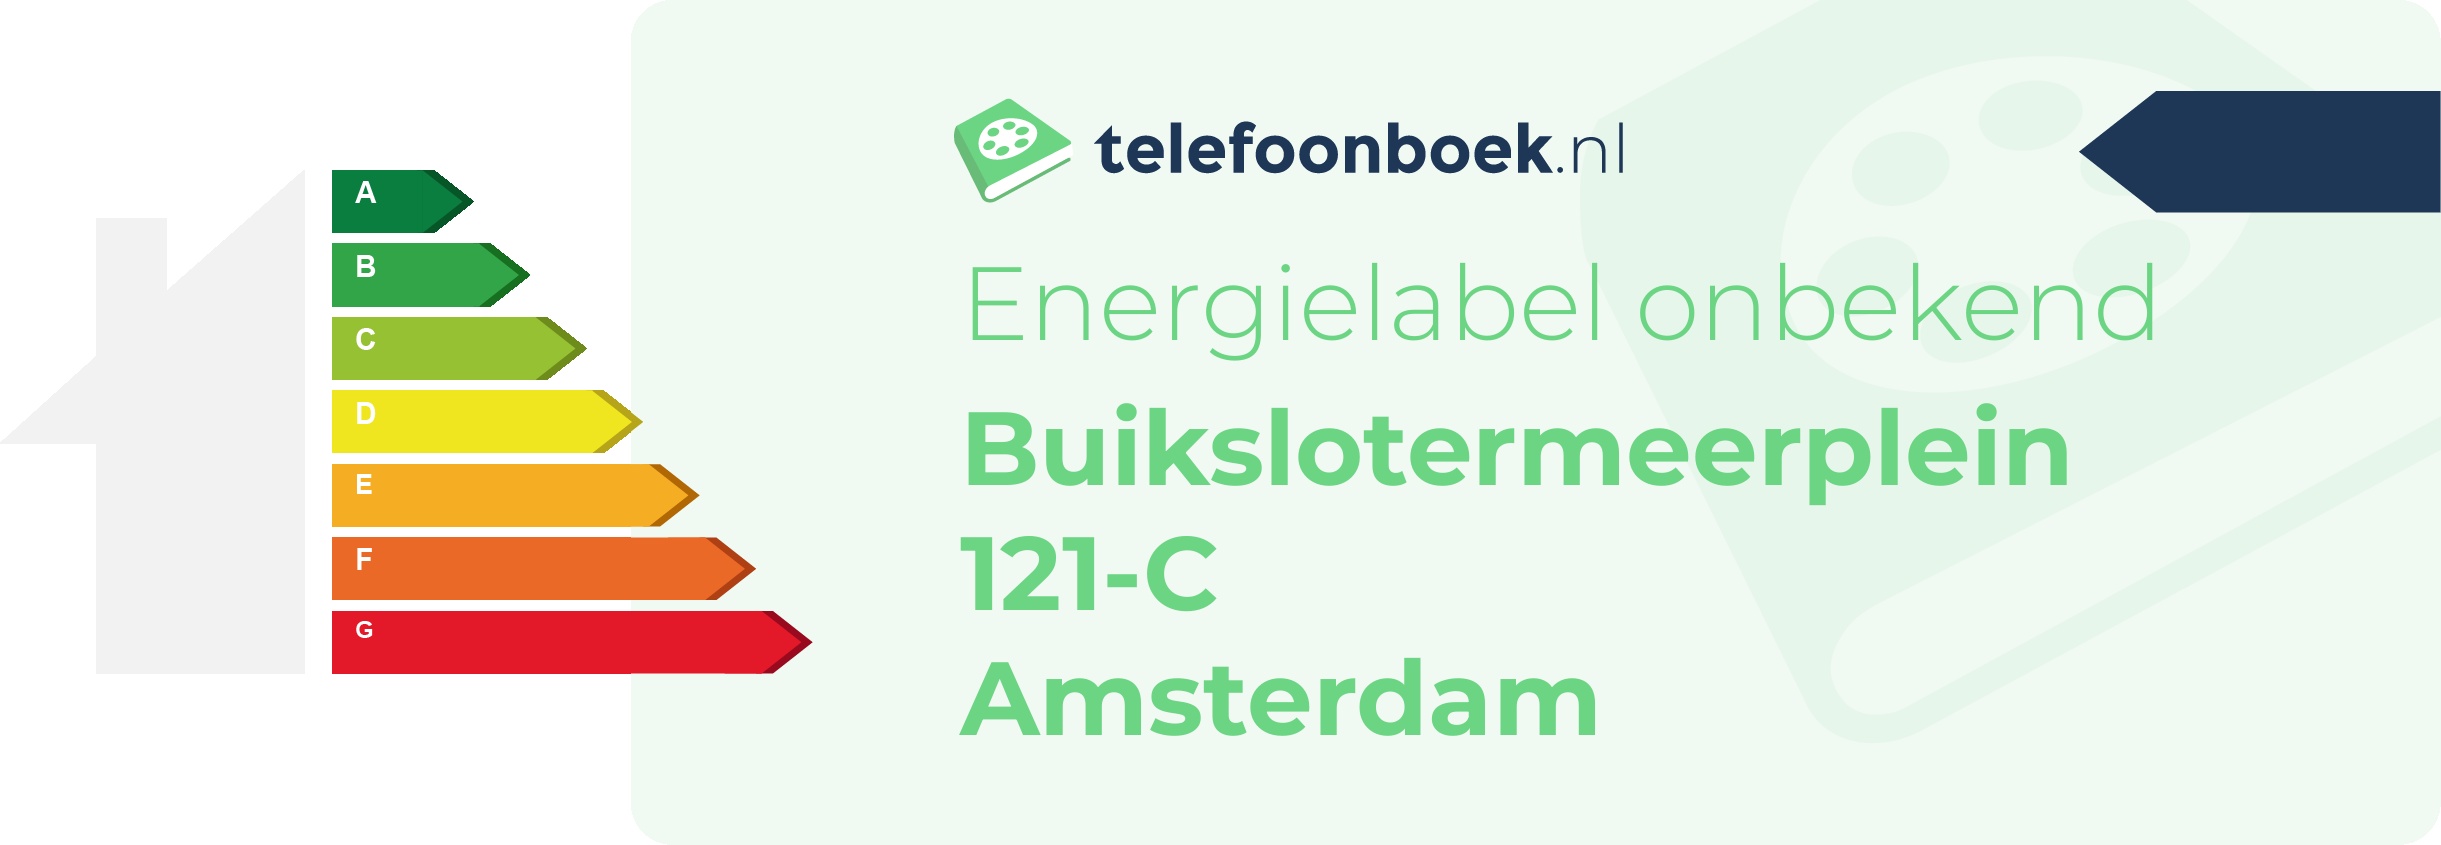 Energielabel Buikslotermeerplein 121-C Amsterdam